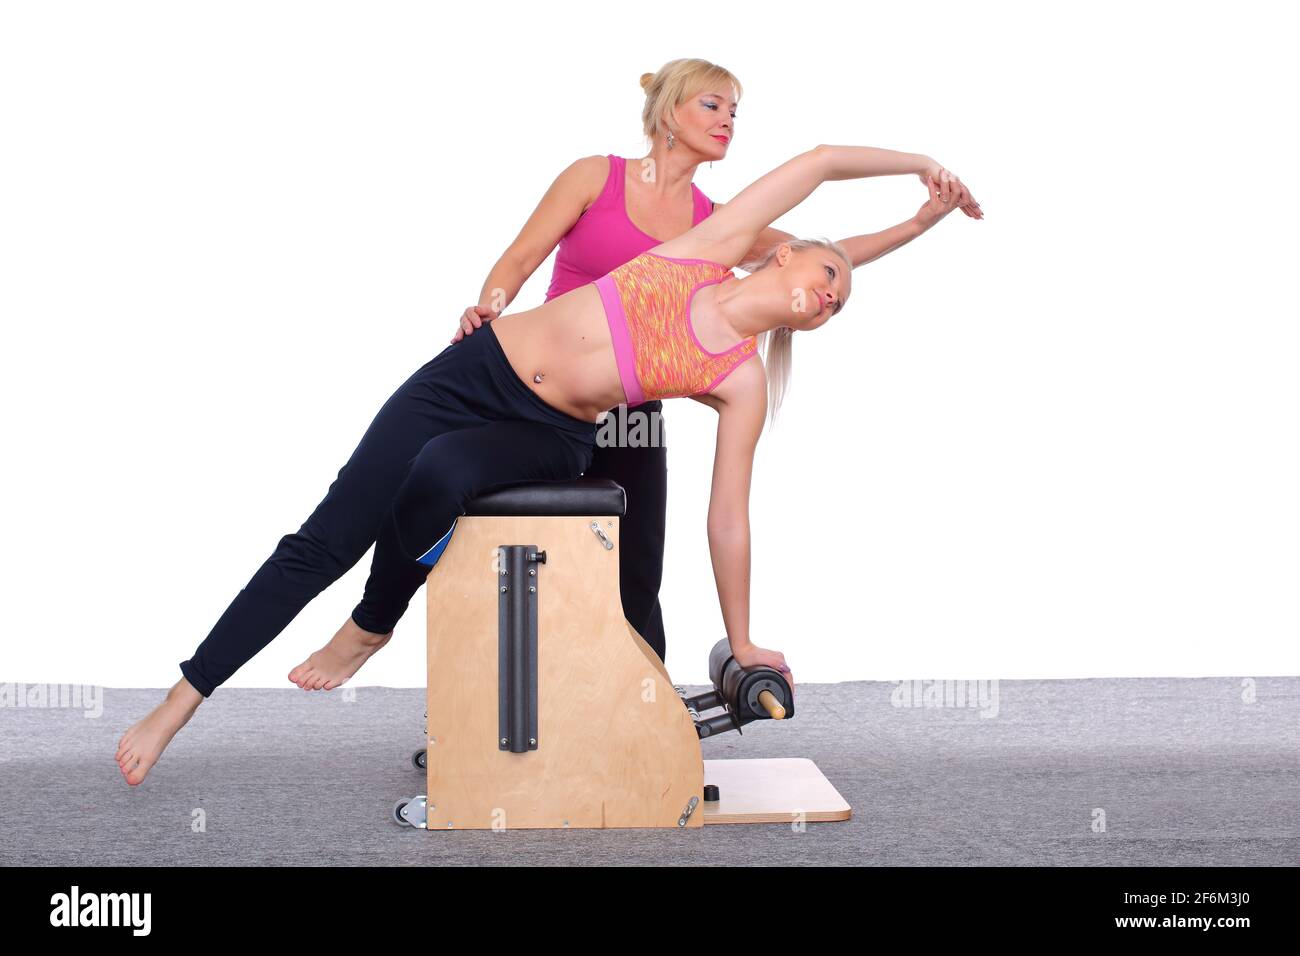 Un entraîneur de 50 ans enseigne un exercice de pilates à une jeune fille  de chaise d'ascenseur, qui arque son corps. Elle est assise sur une  béquille légère Photo Stock - Alamy